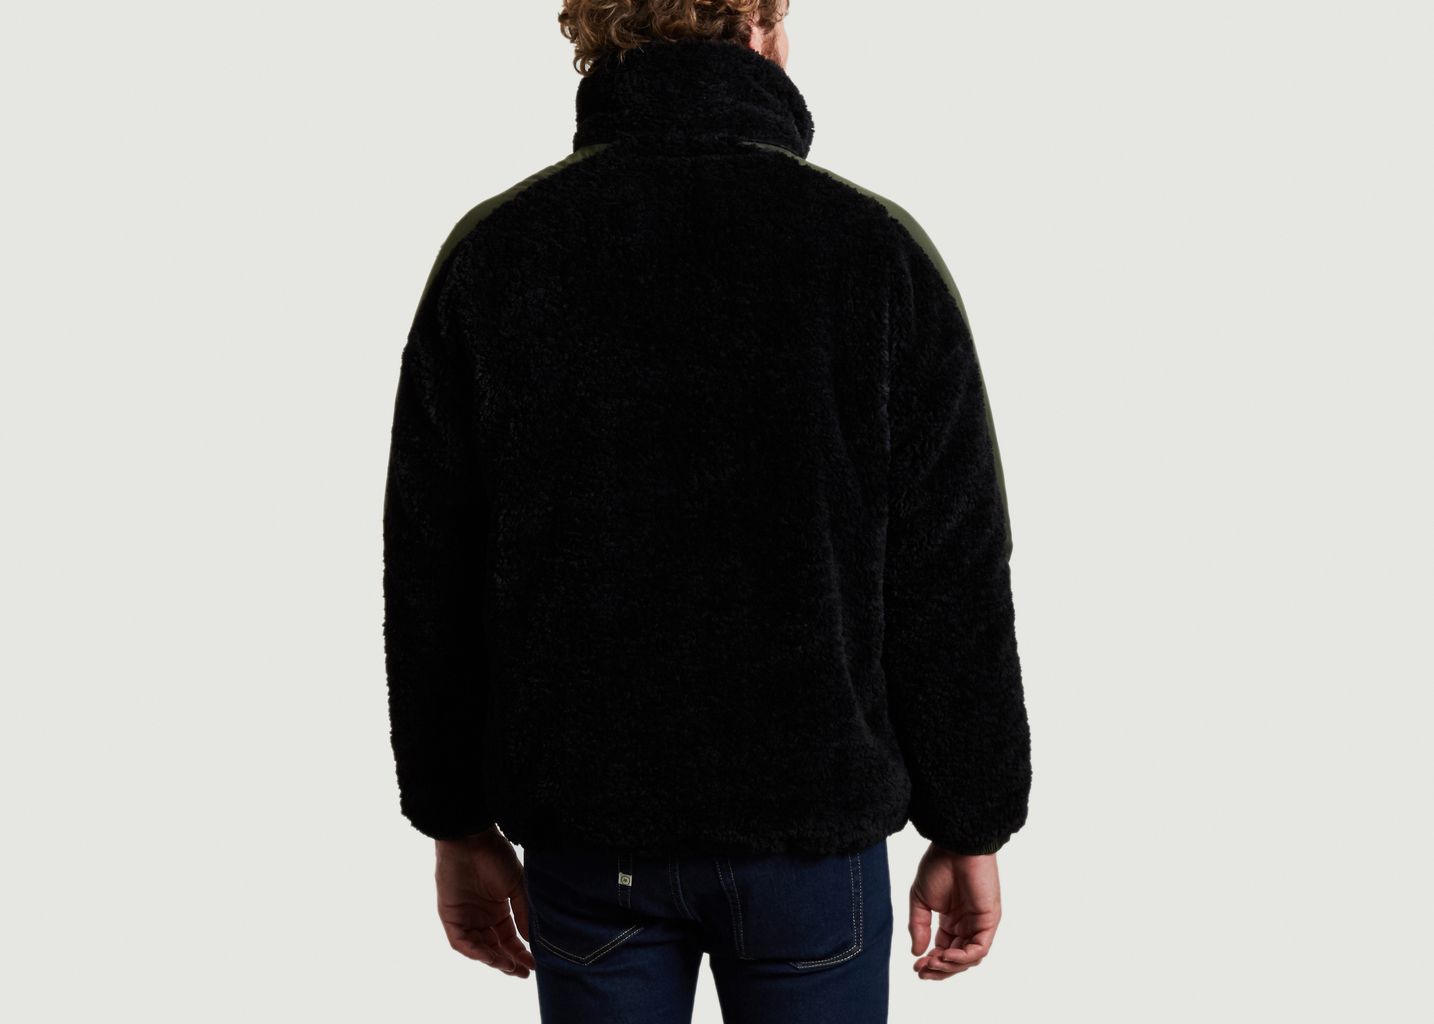 Sweatshirt 5018 oversize en fausse fourrure noir - OOF WEAR